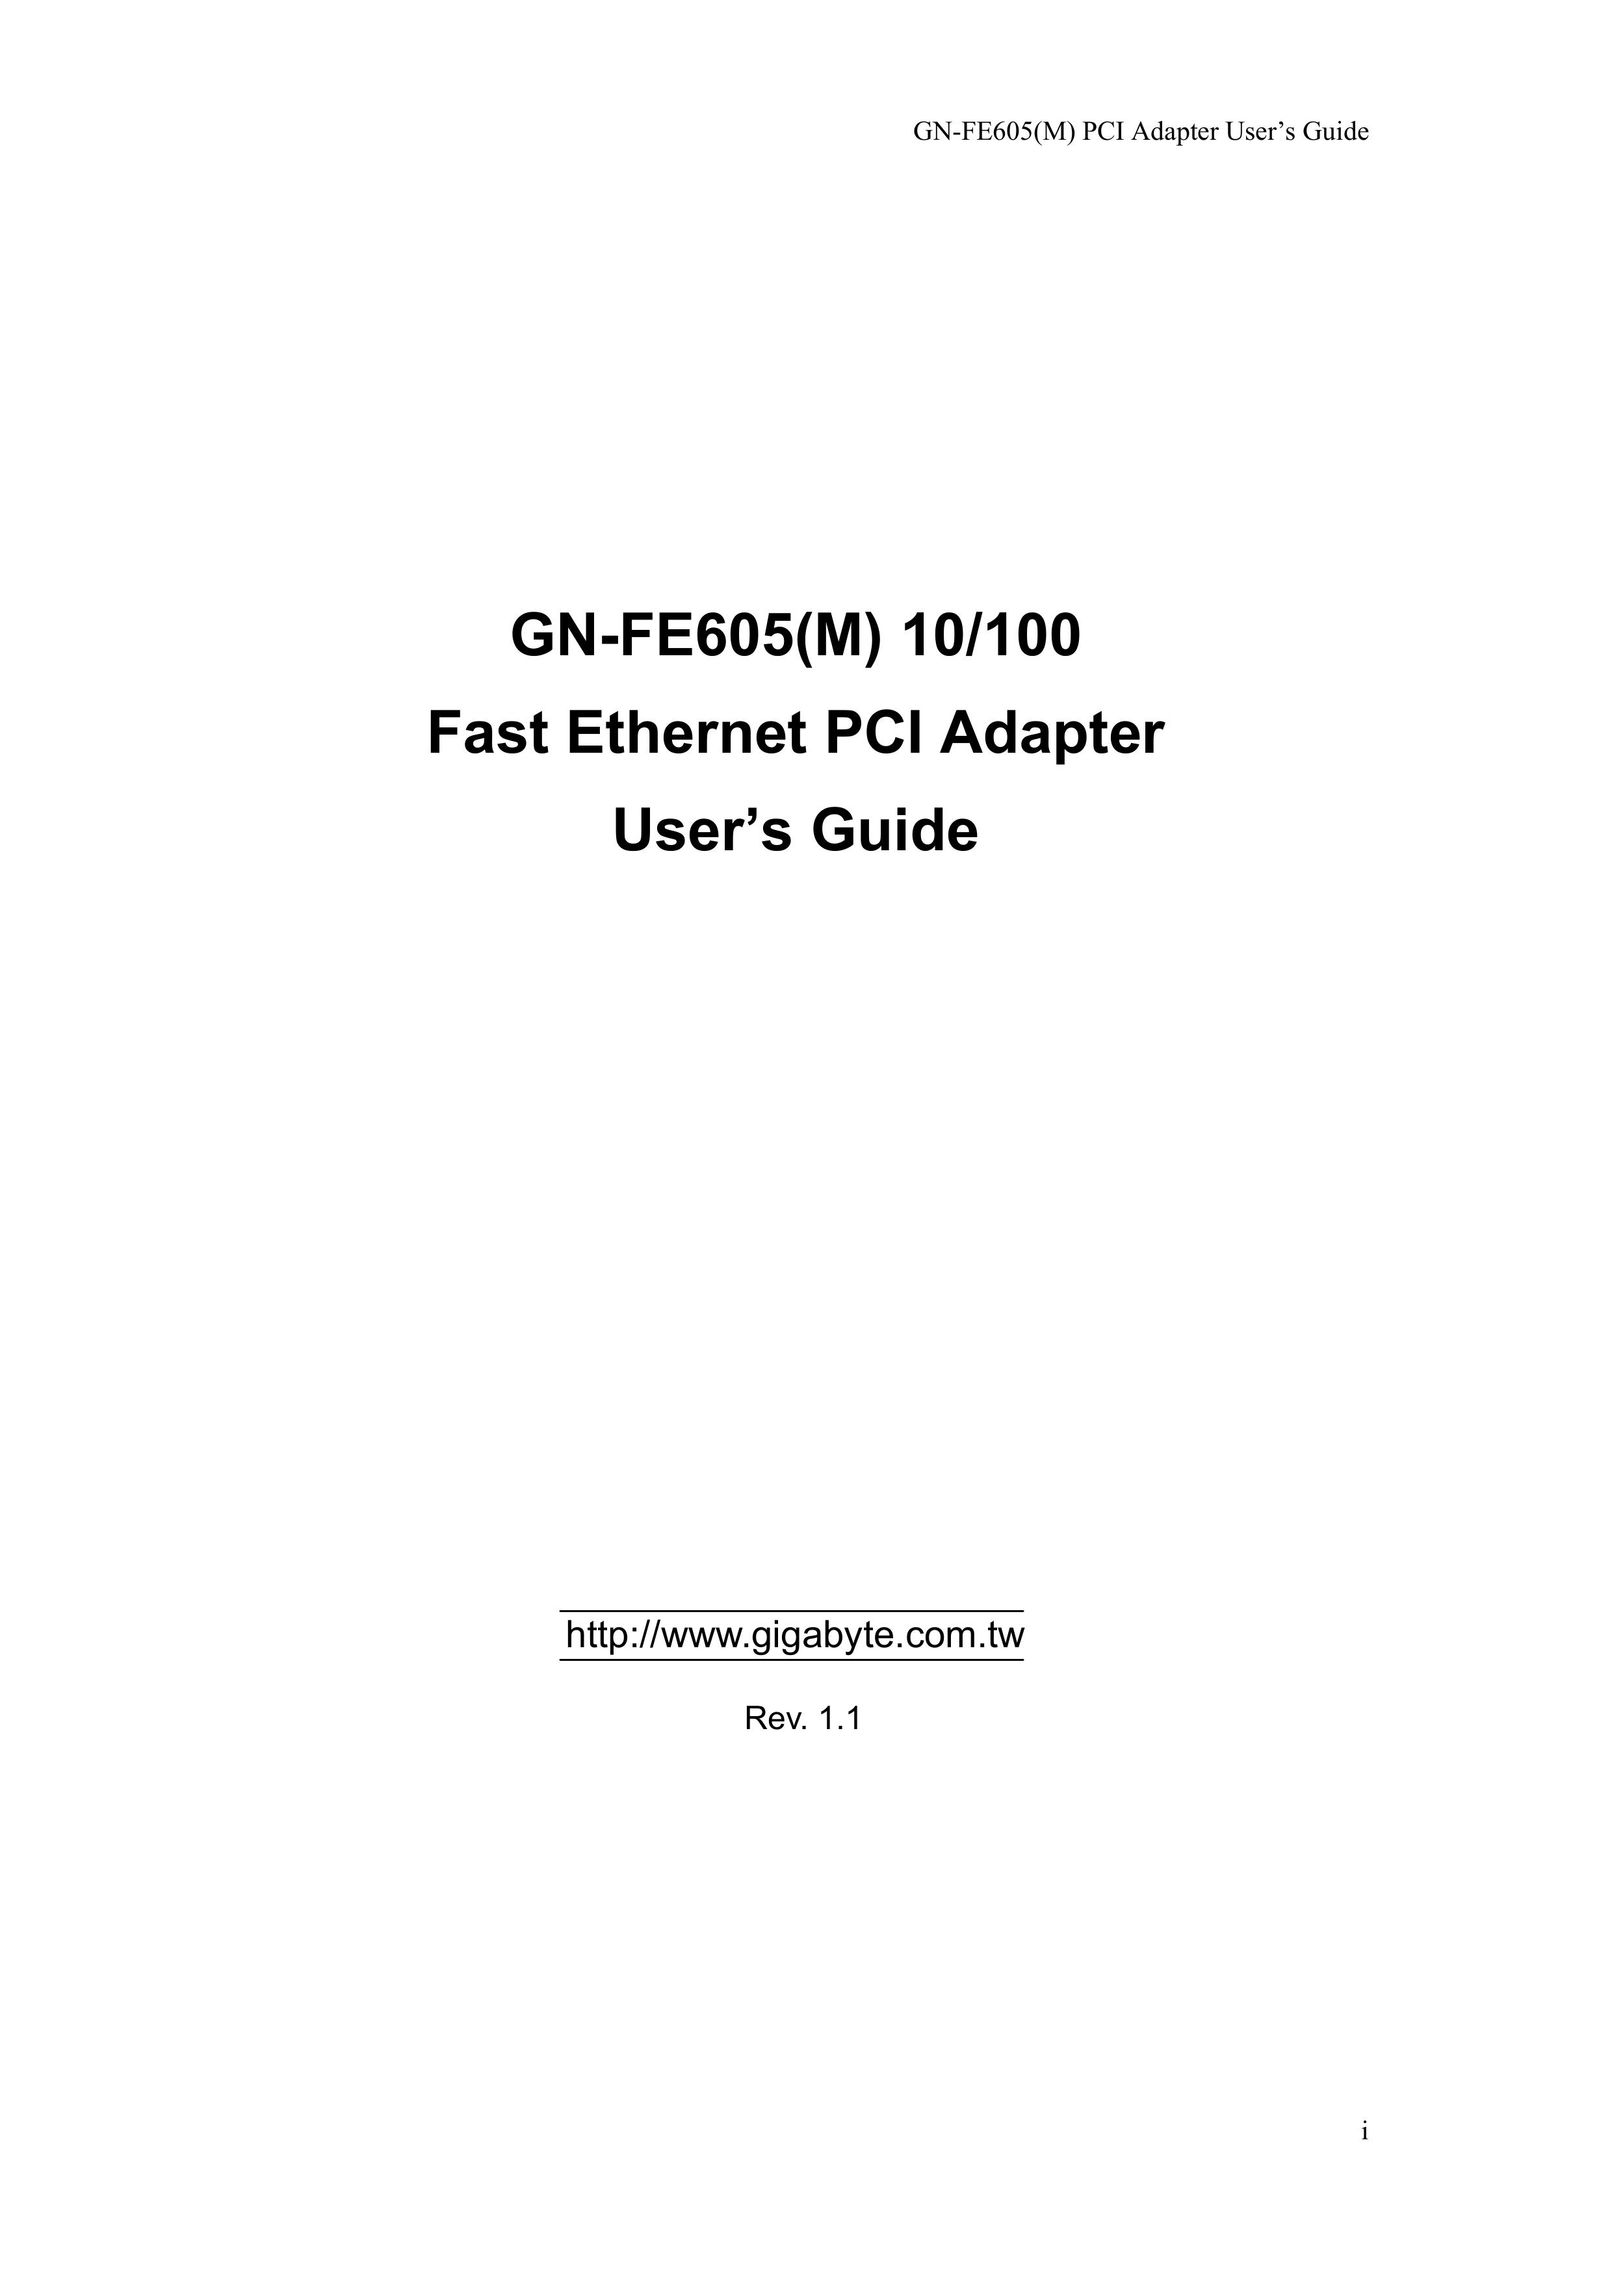 Gigabyte GN-FE605 Network Card User Manual